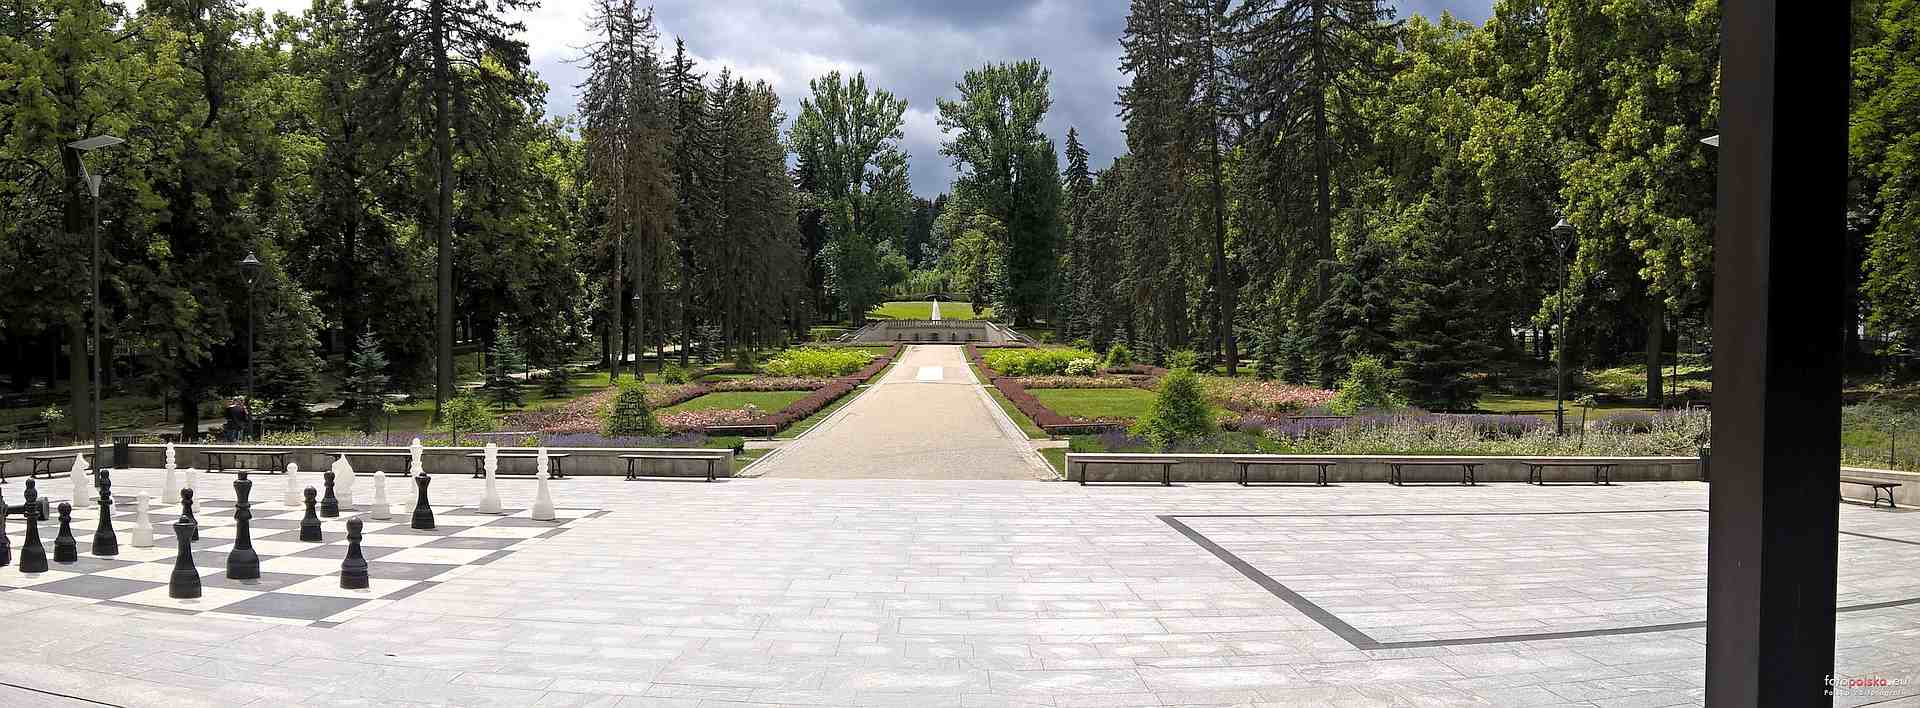 Polanica Chess Park